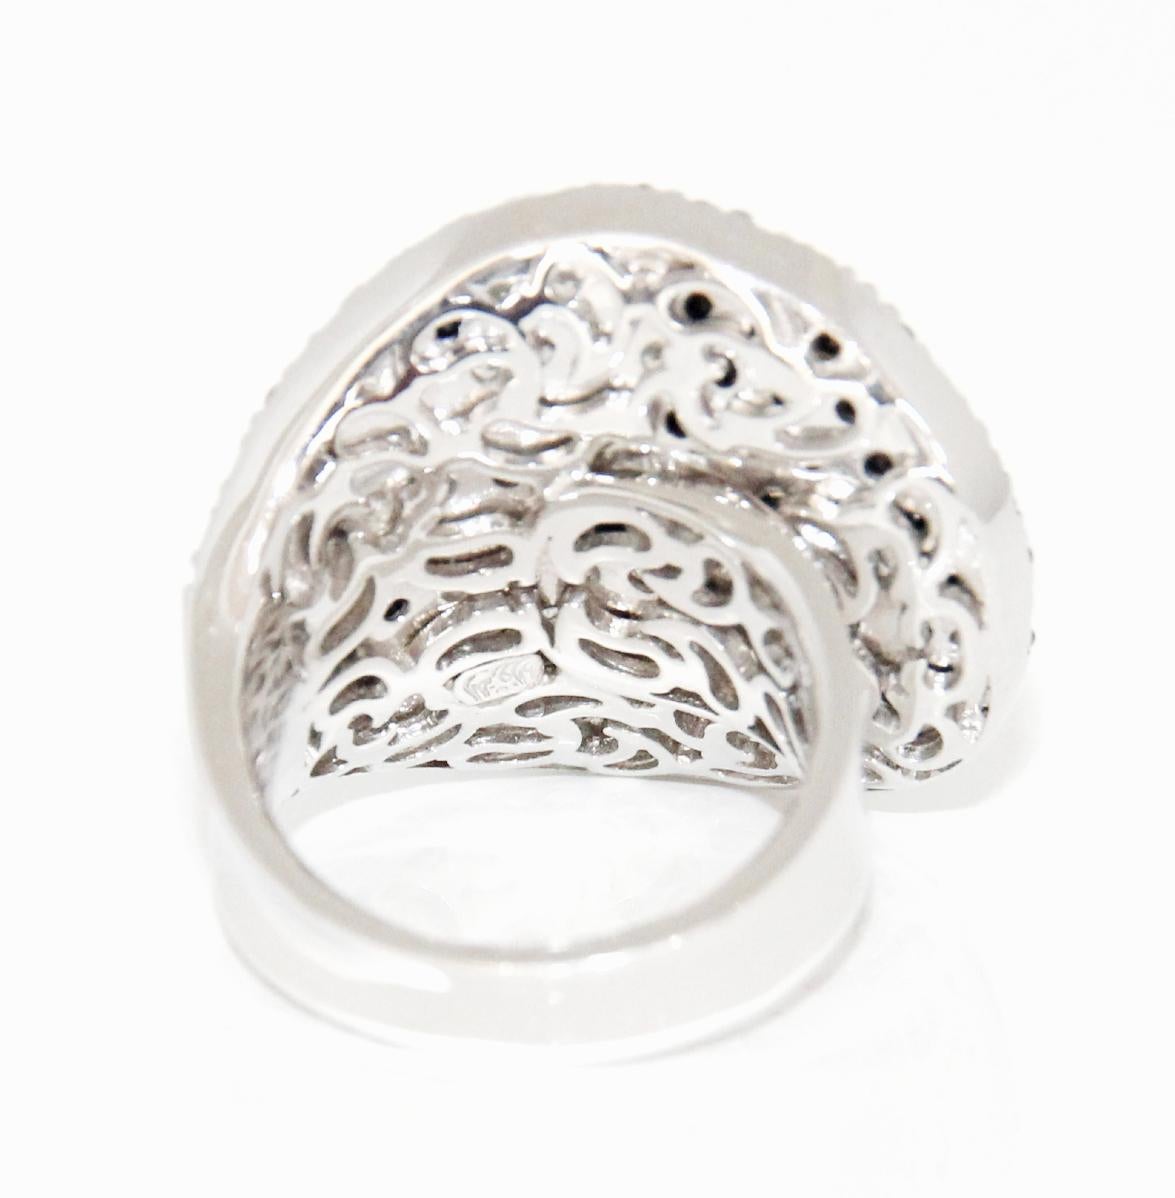 Brilliant Cut Stefan Hafner 18K White Gold Diamond Ring For Sale